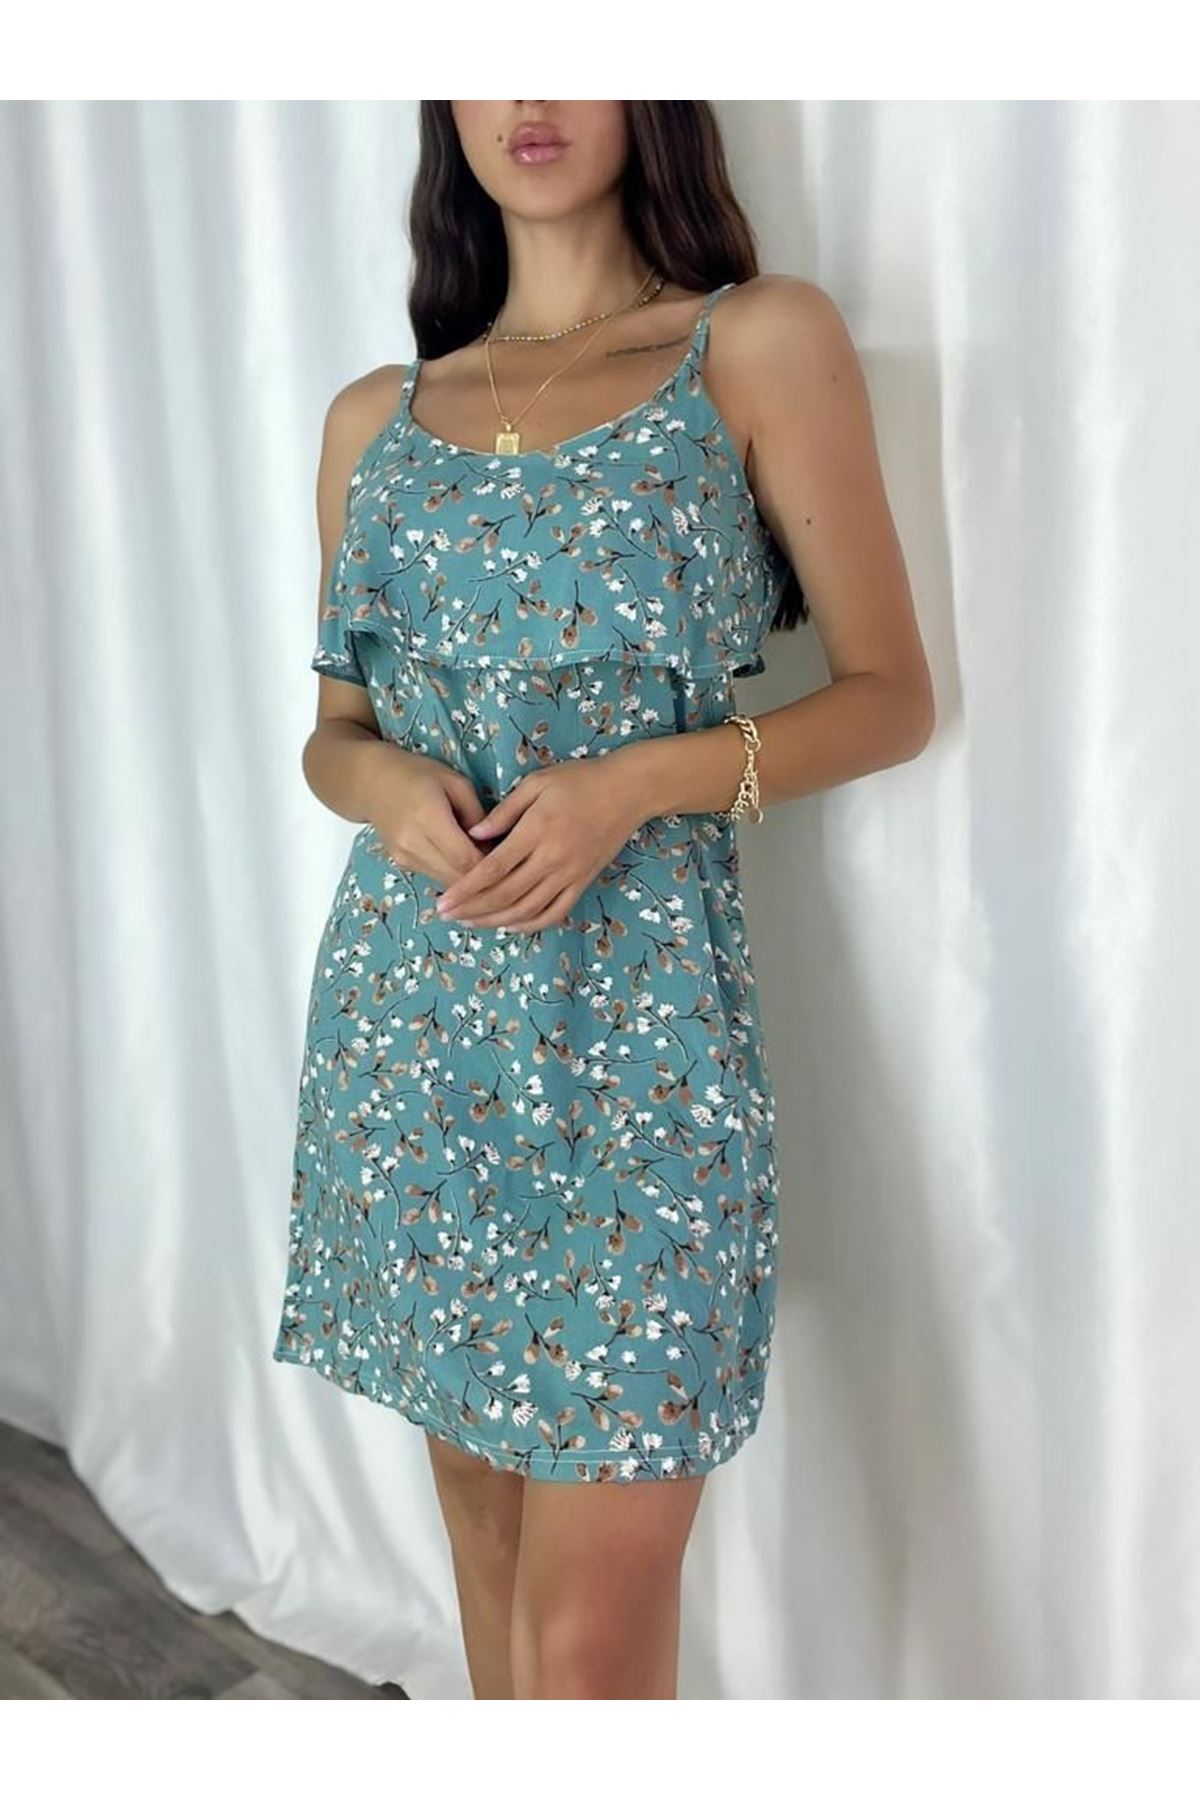 Kadın Mint Askılı Kısa Pelerin Model Yazlık Dokuma Elbise 6C-2124